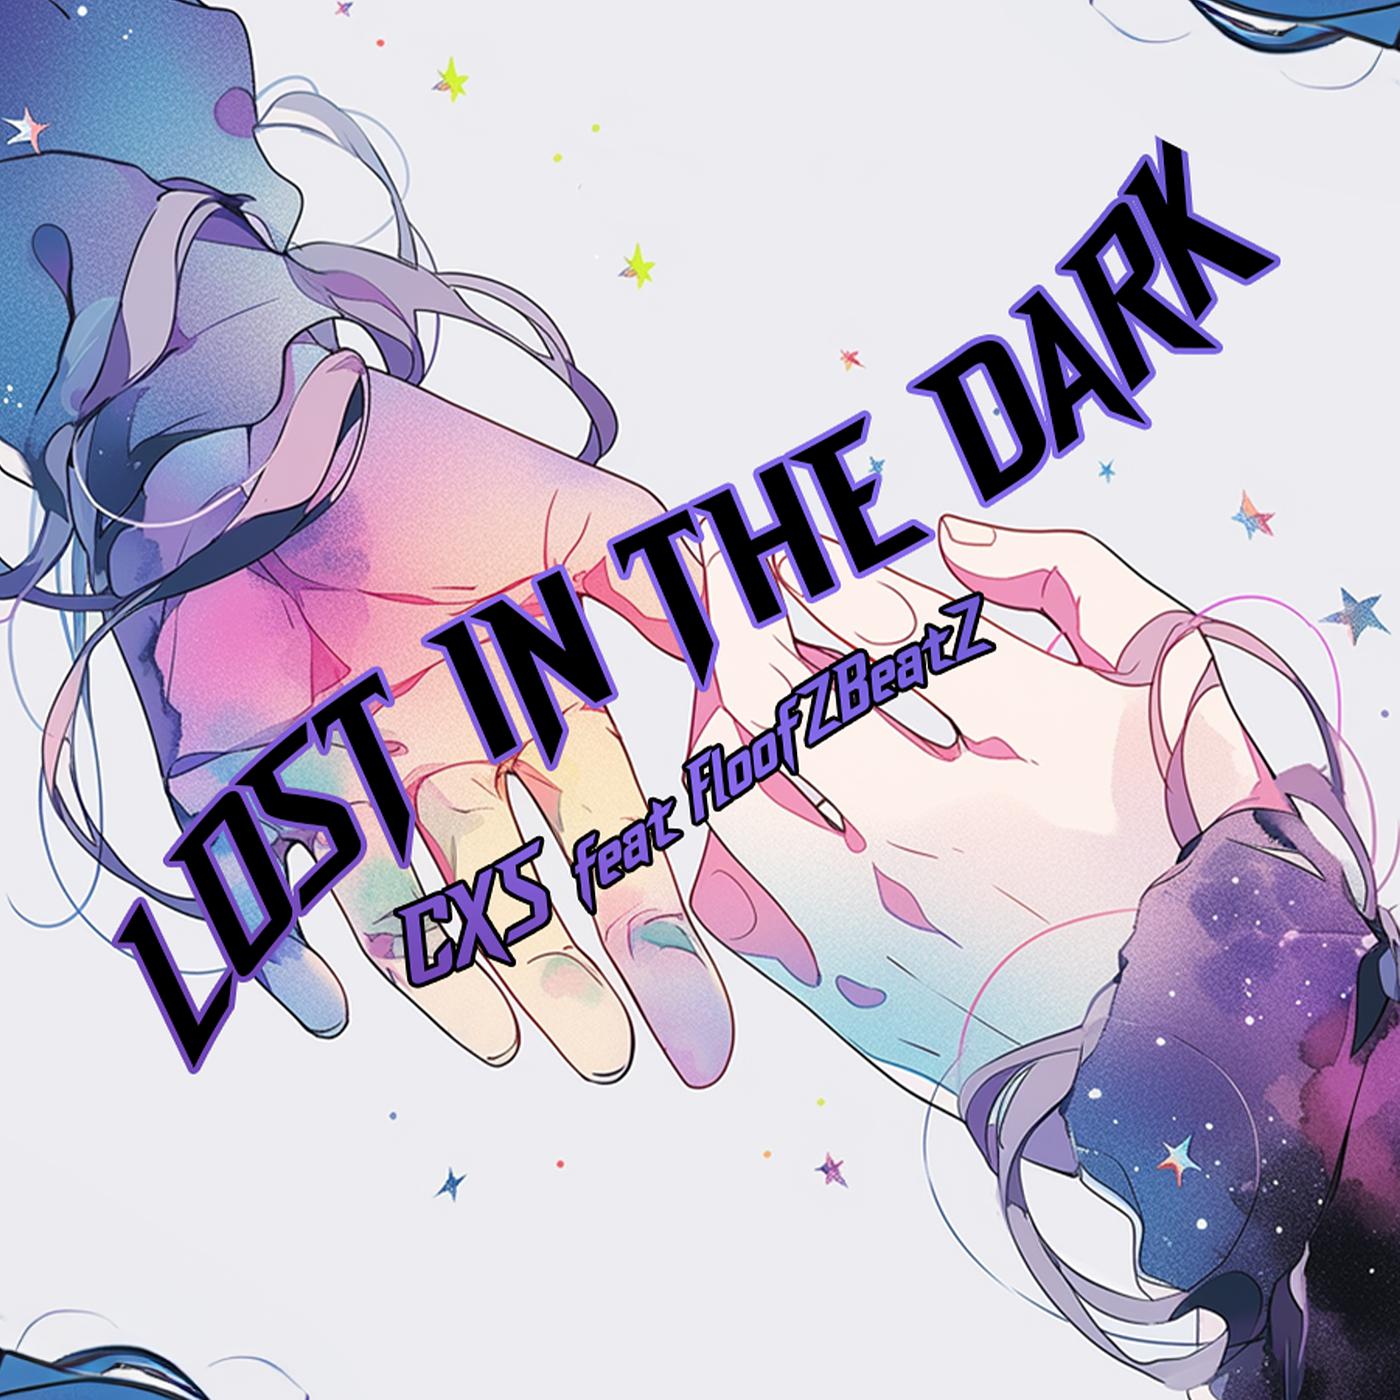 Постер альбома Lost in the Dark